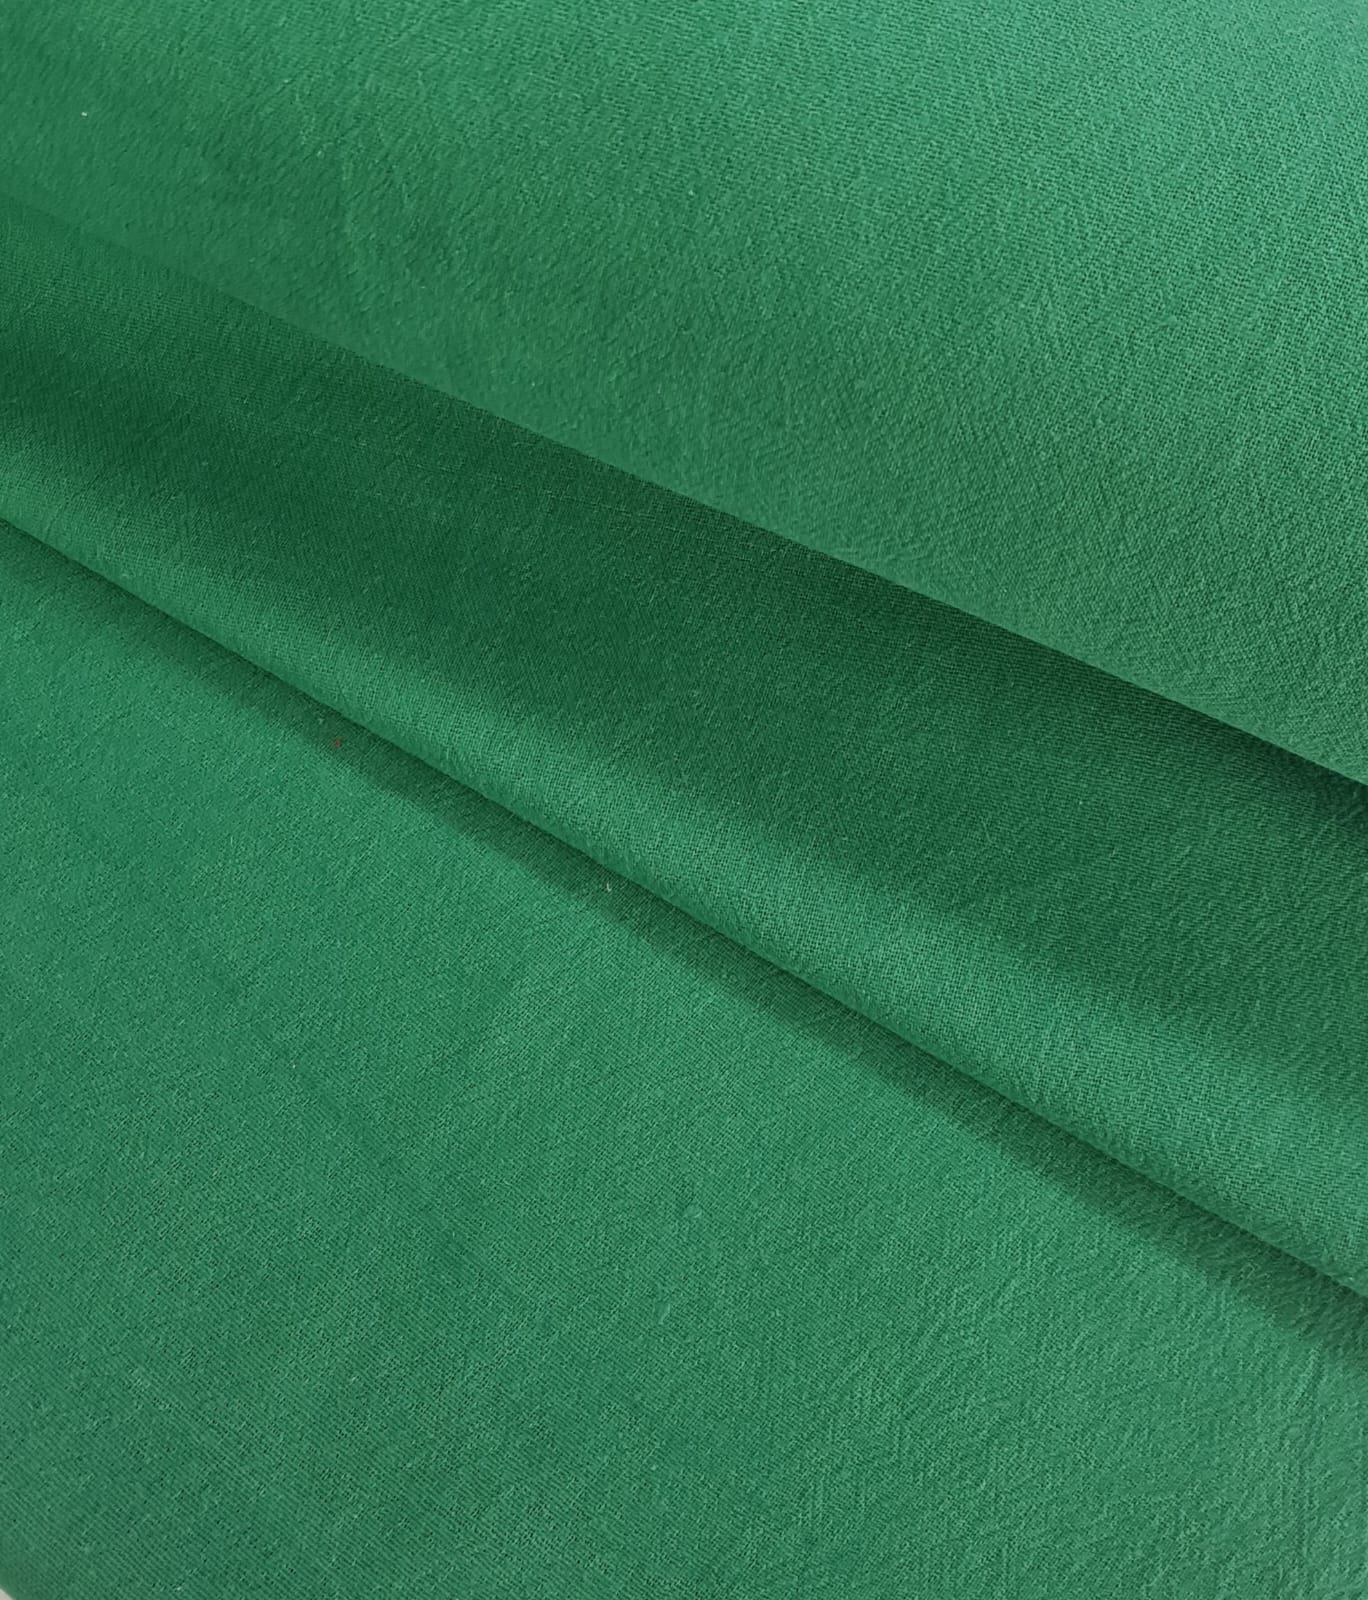 Pano de Prato Verde Bandeira Pé de Galinha Ober 50x74cm